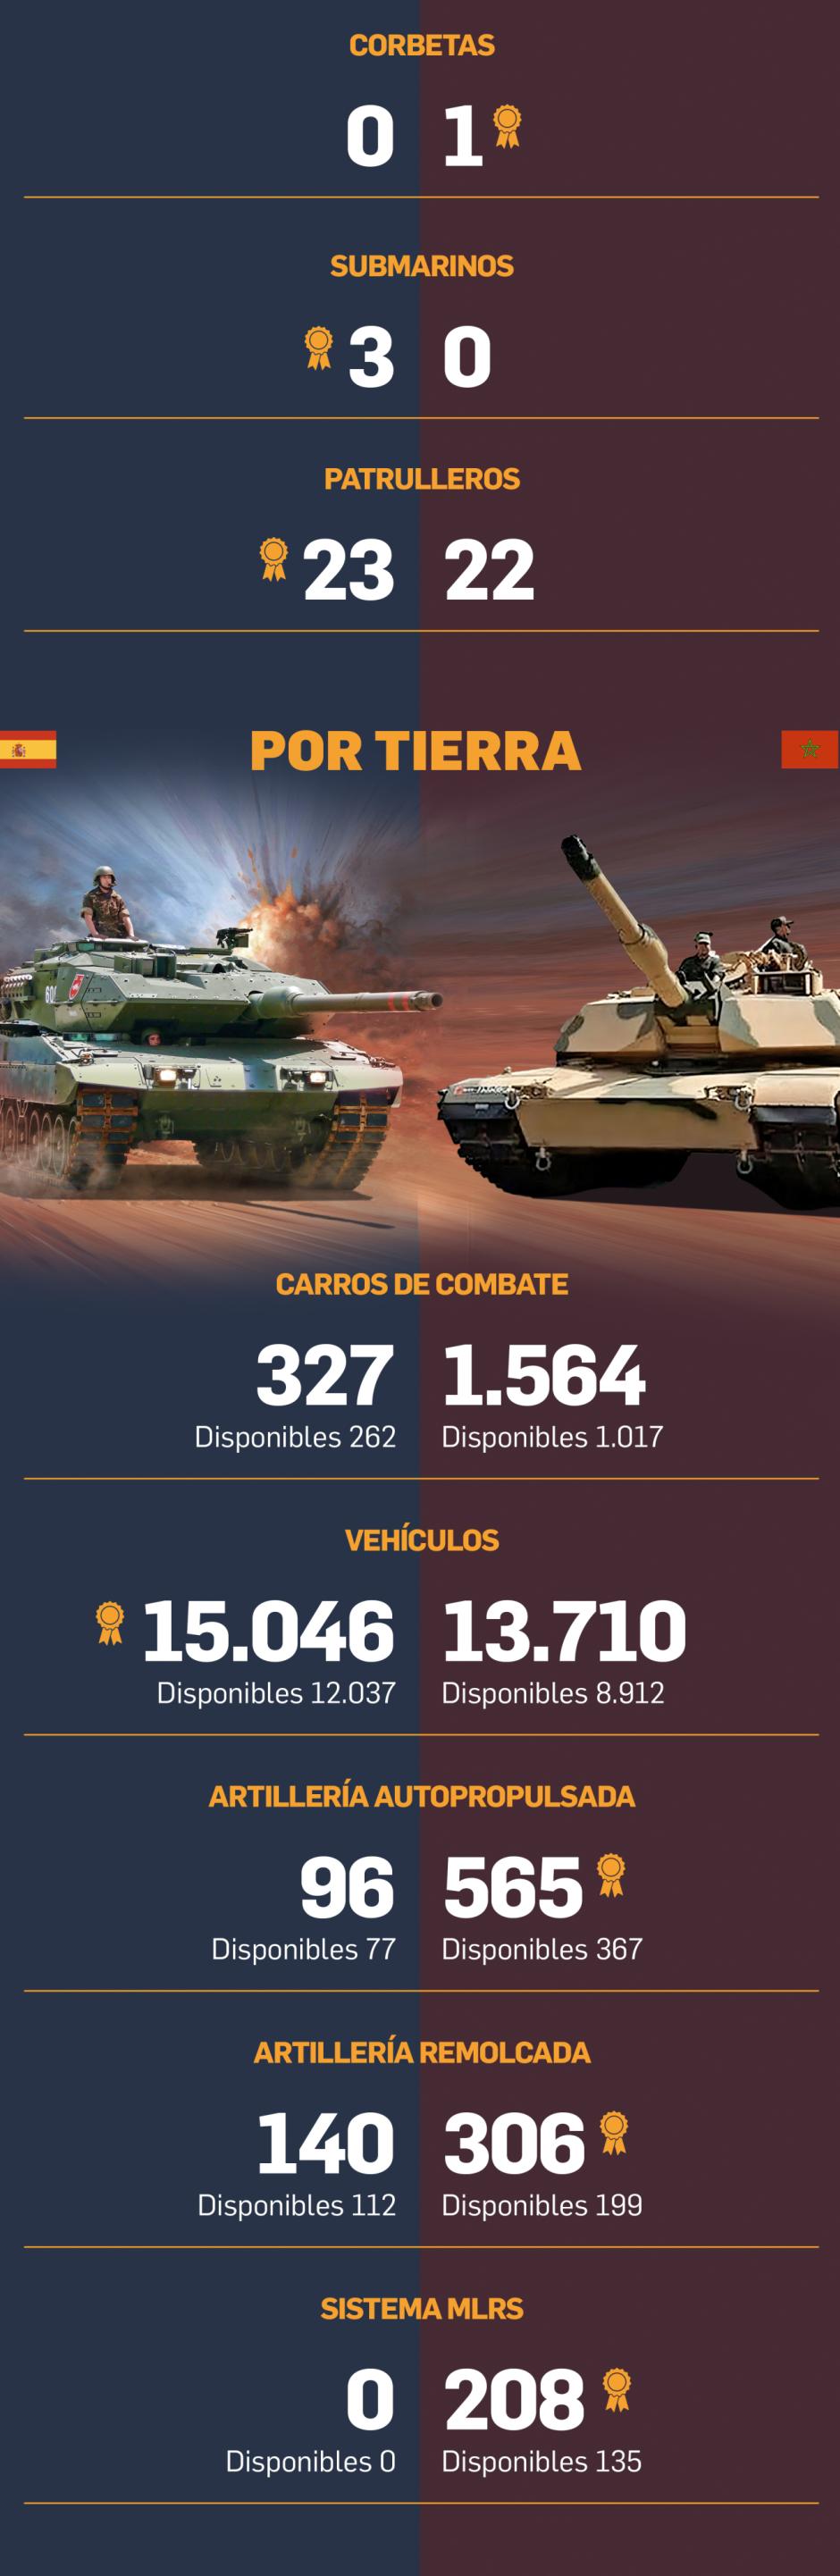 España contra Marruecos en capacidad militar